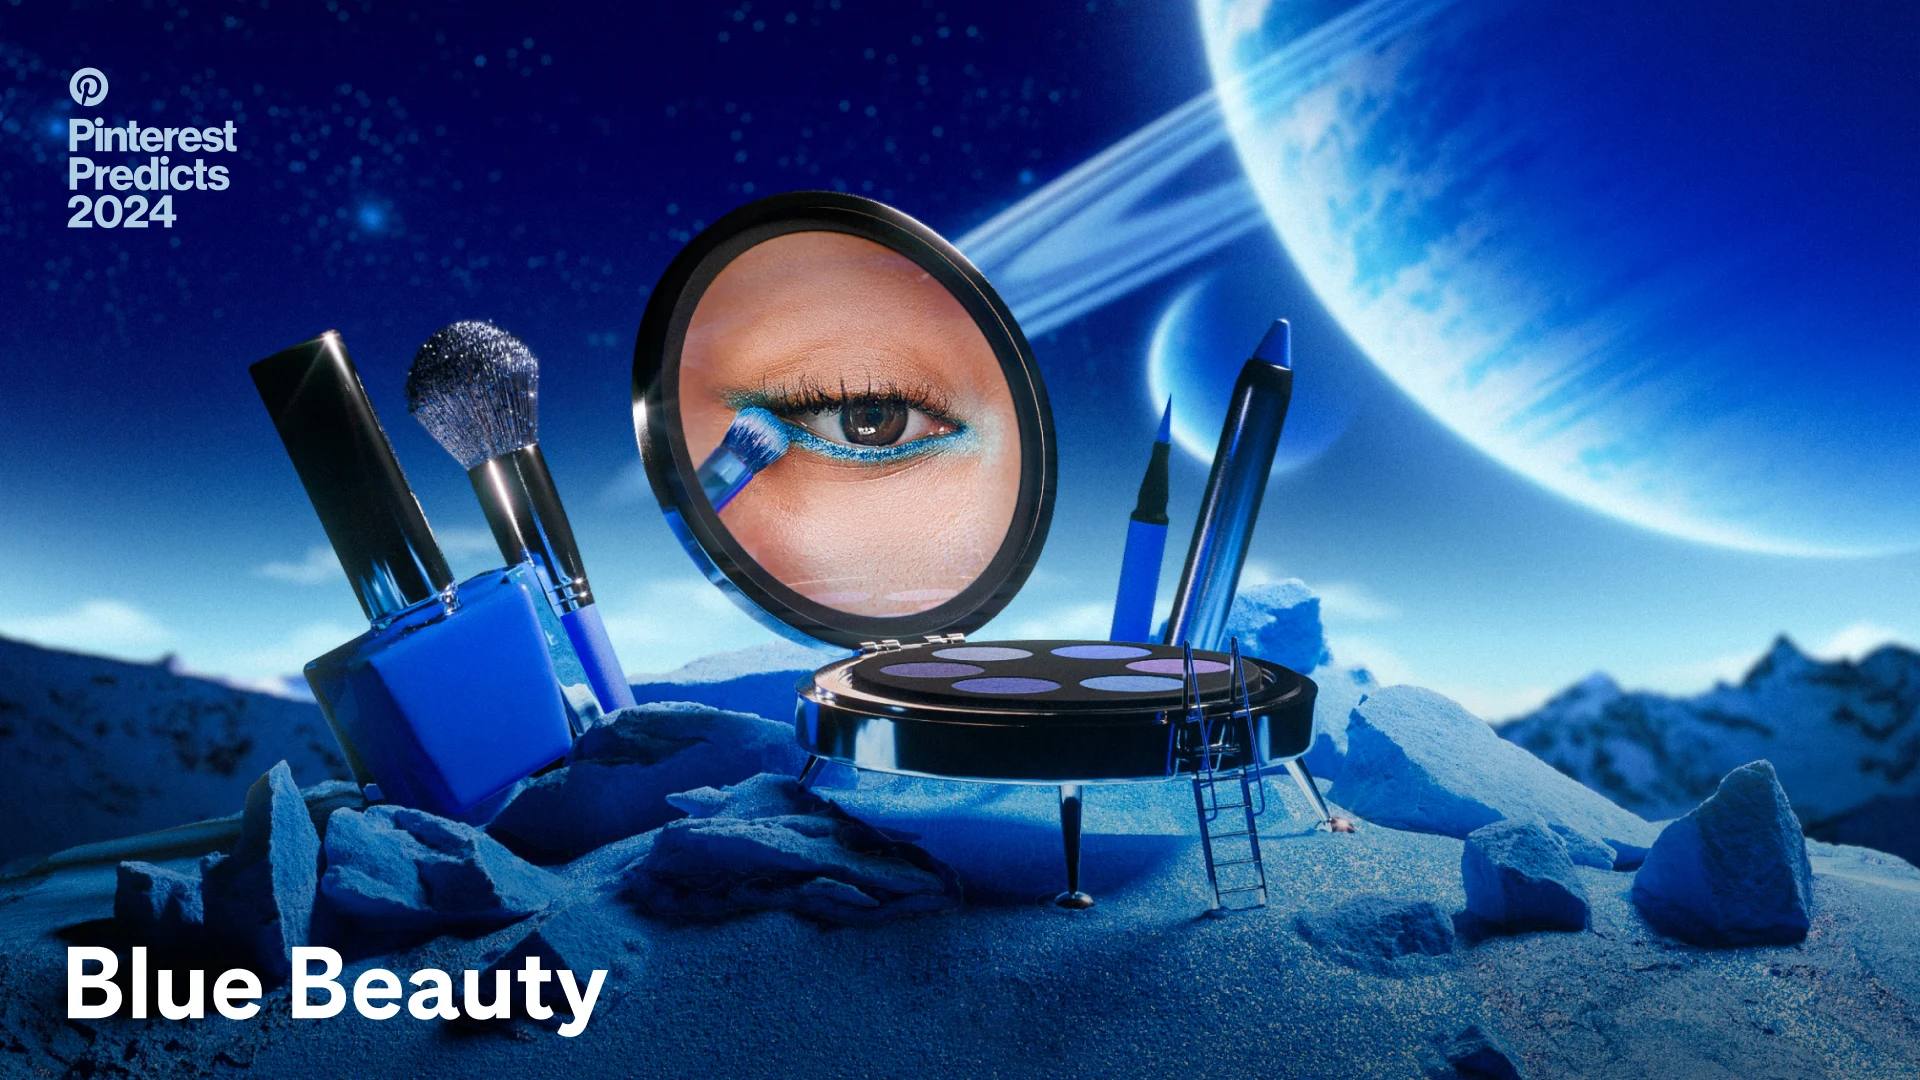 Bei einer Miniatur-Mondlandung fungiert eine Augenpalette als Raumschiff und enthüllt ein blaues Augen-Make-up, Seite an Seite mit blauen Linern, Pinsel und Nagellack